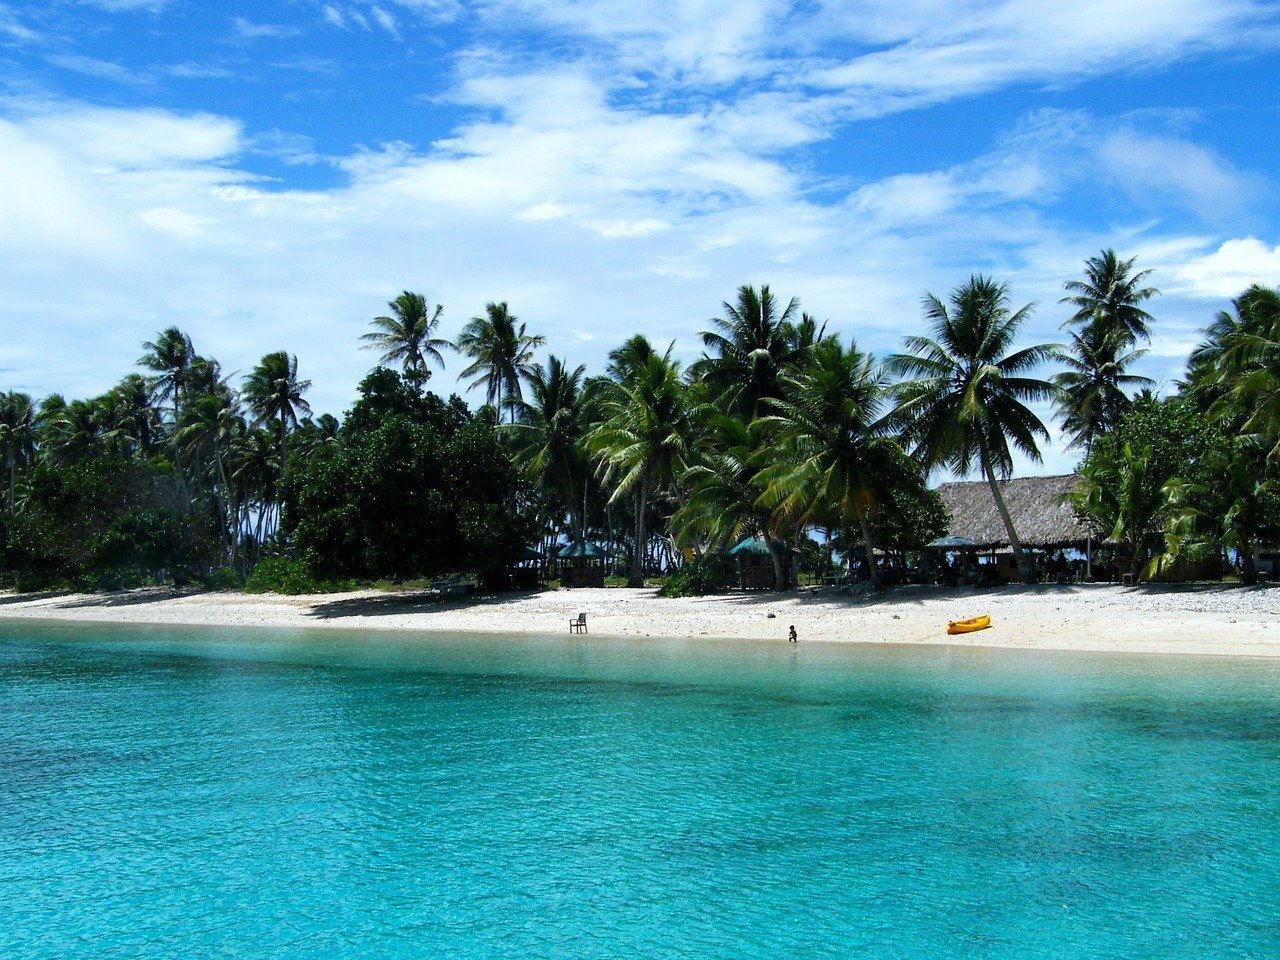 Après la Micronésie, les îles Marshall enregistrent leurs premiers cas locaux de Covid-19 (Image : Pixabay)